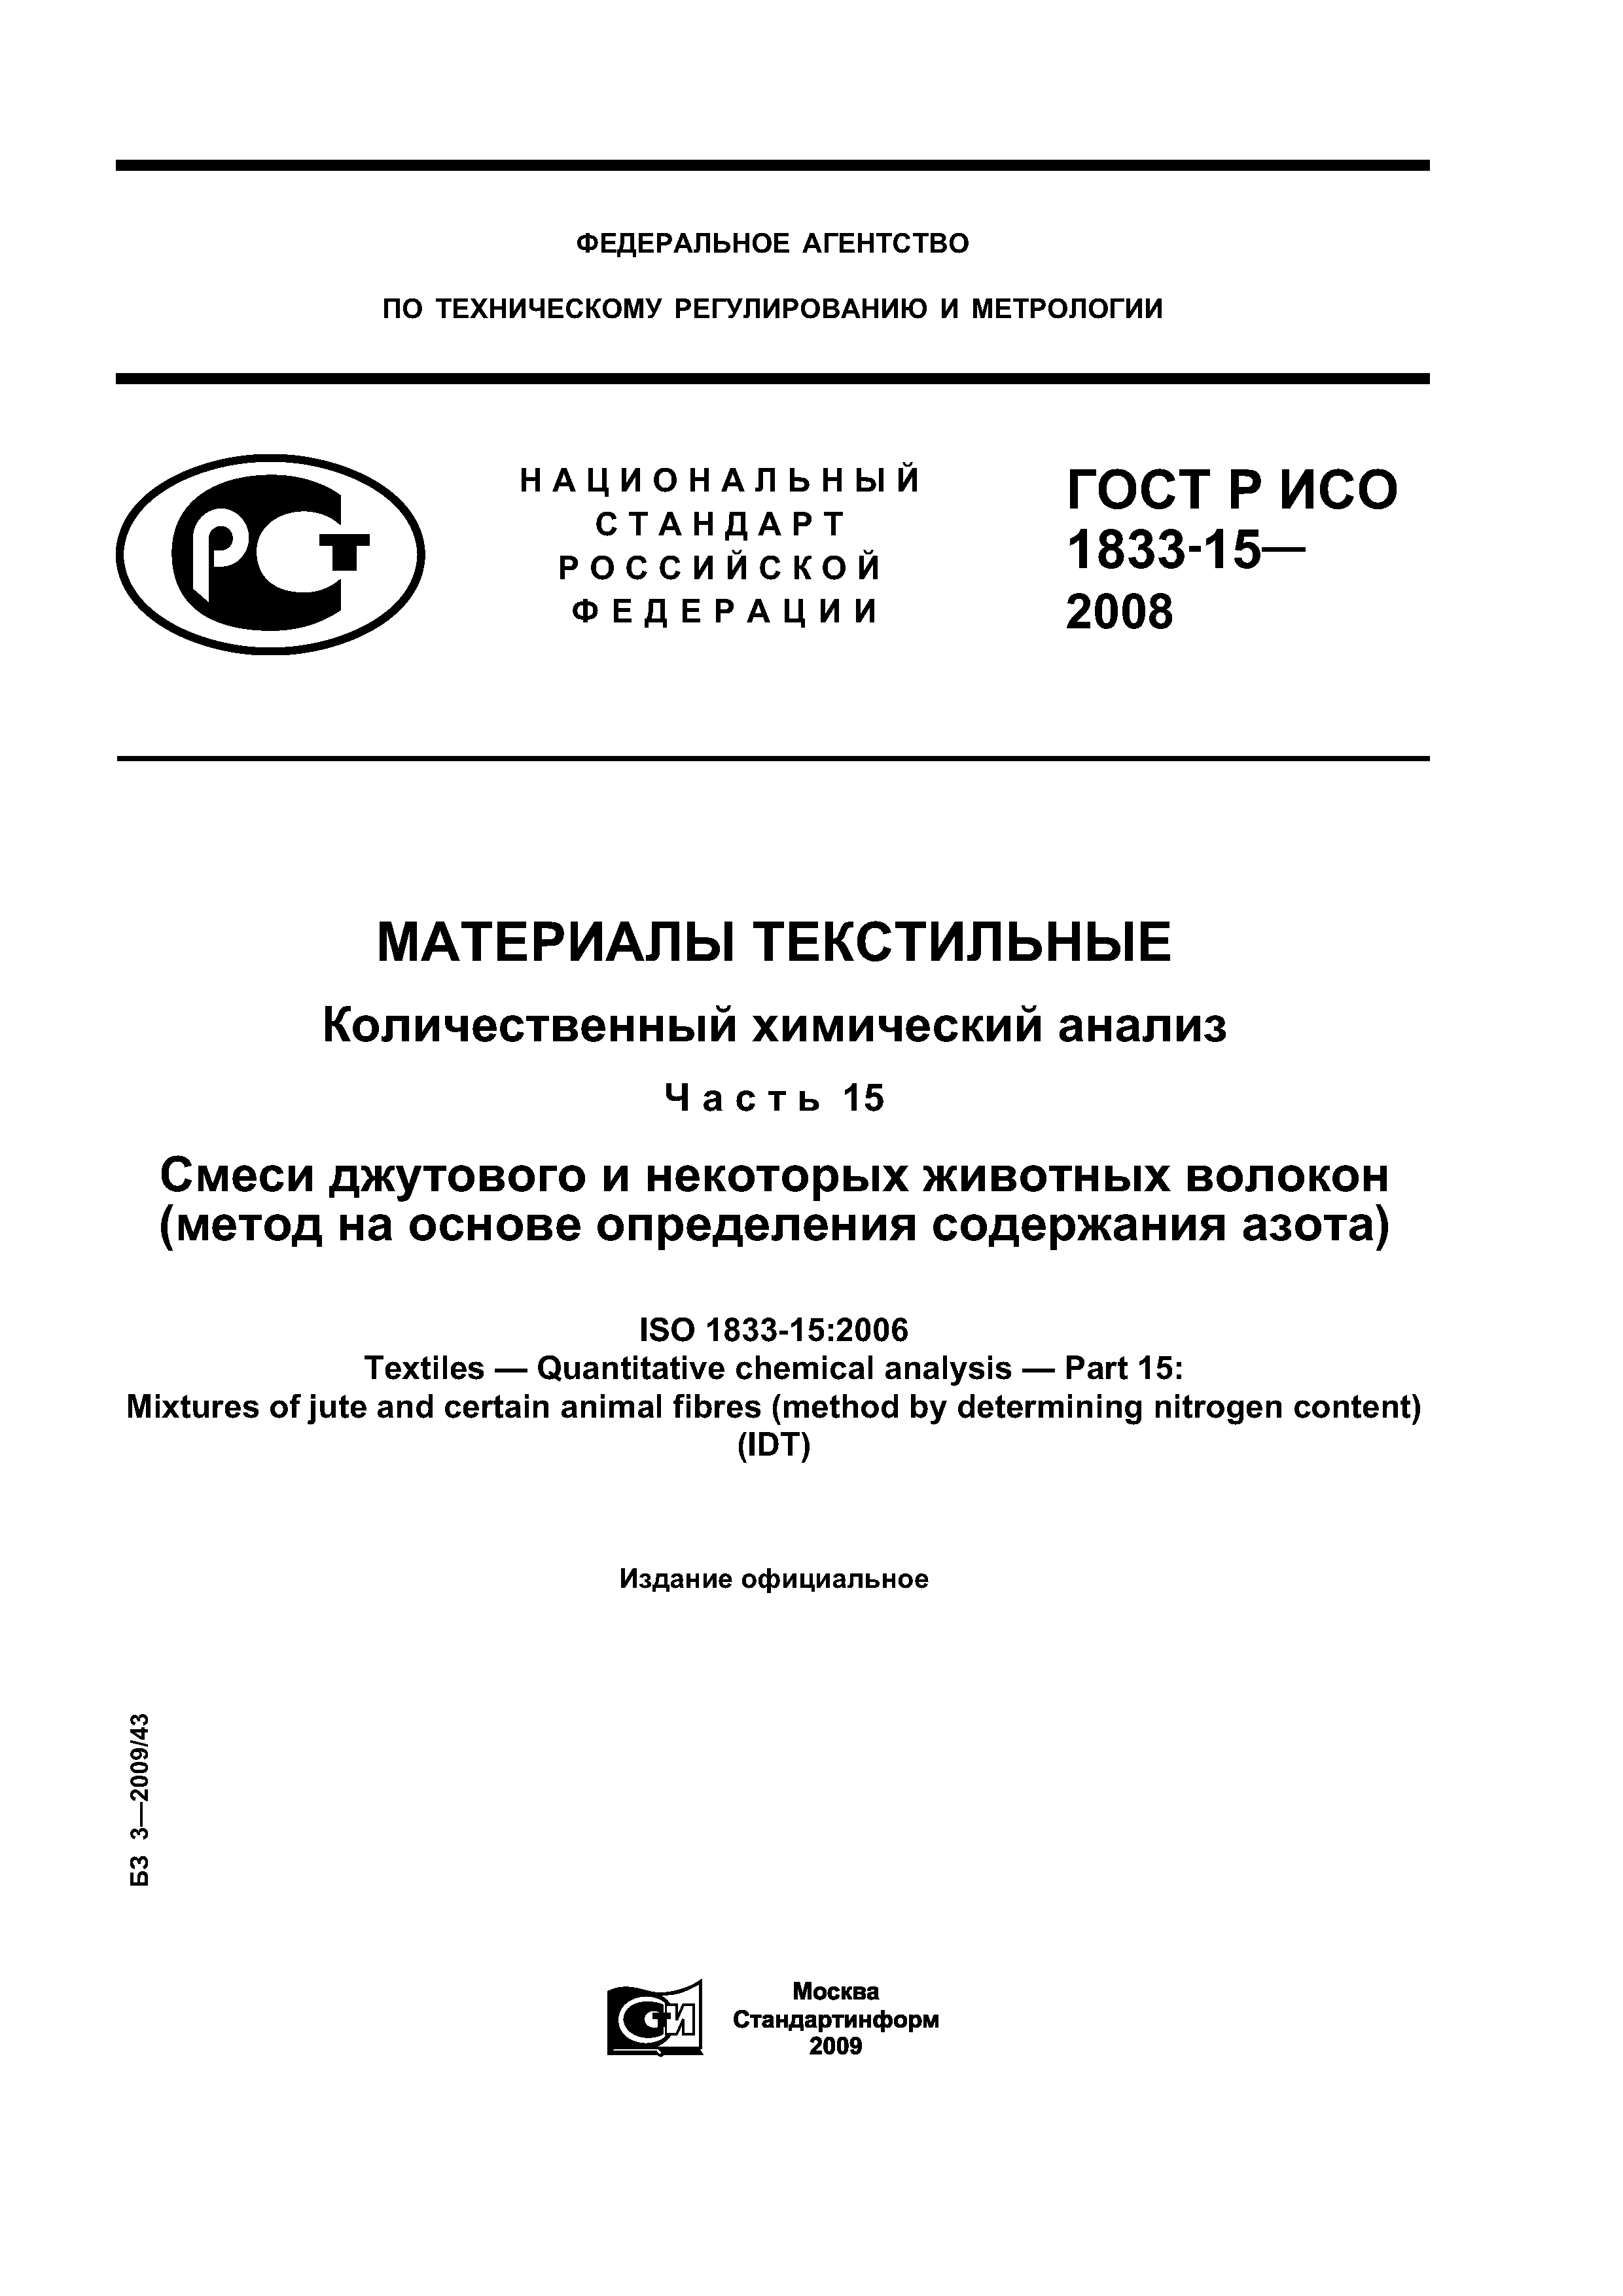 ГОСТ Р ИСО 1833-15-2008